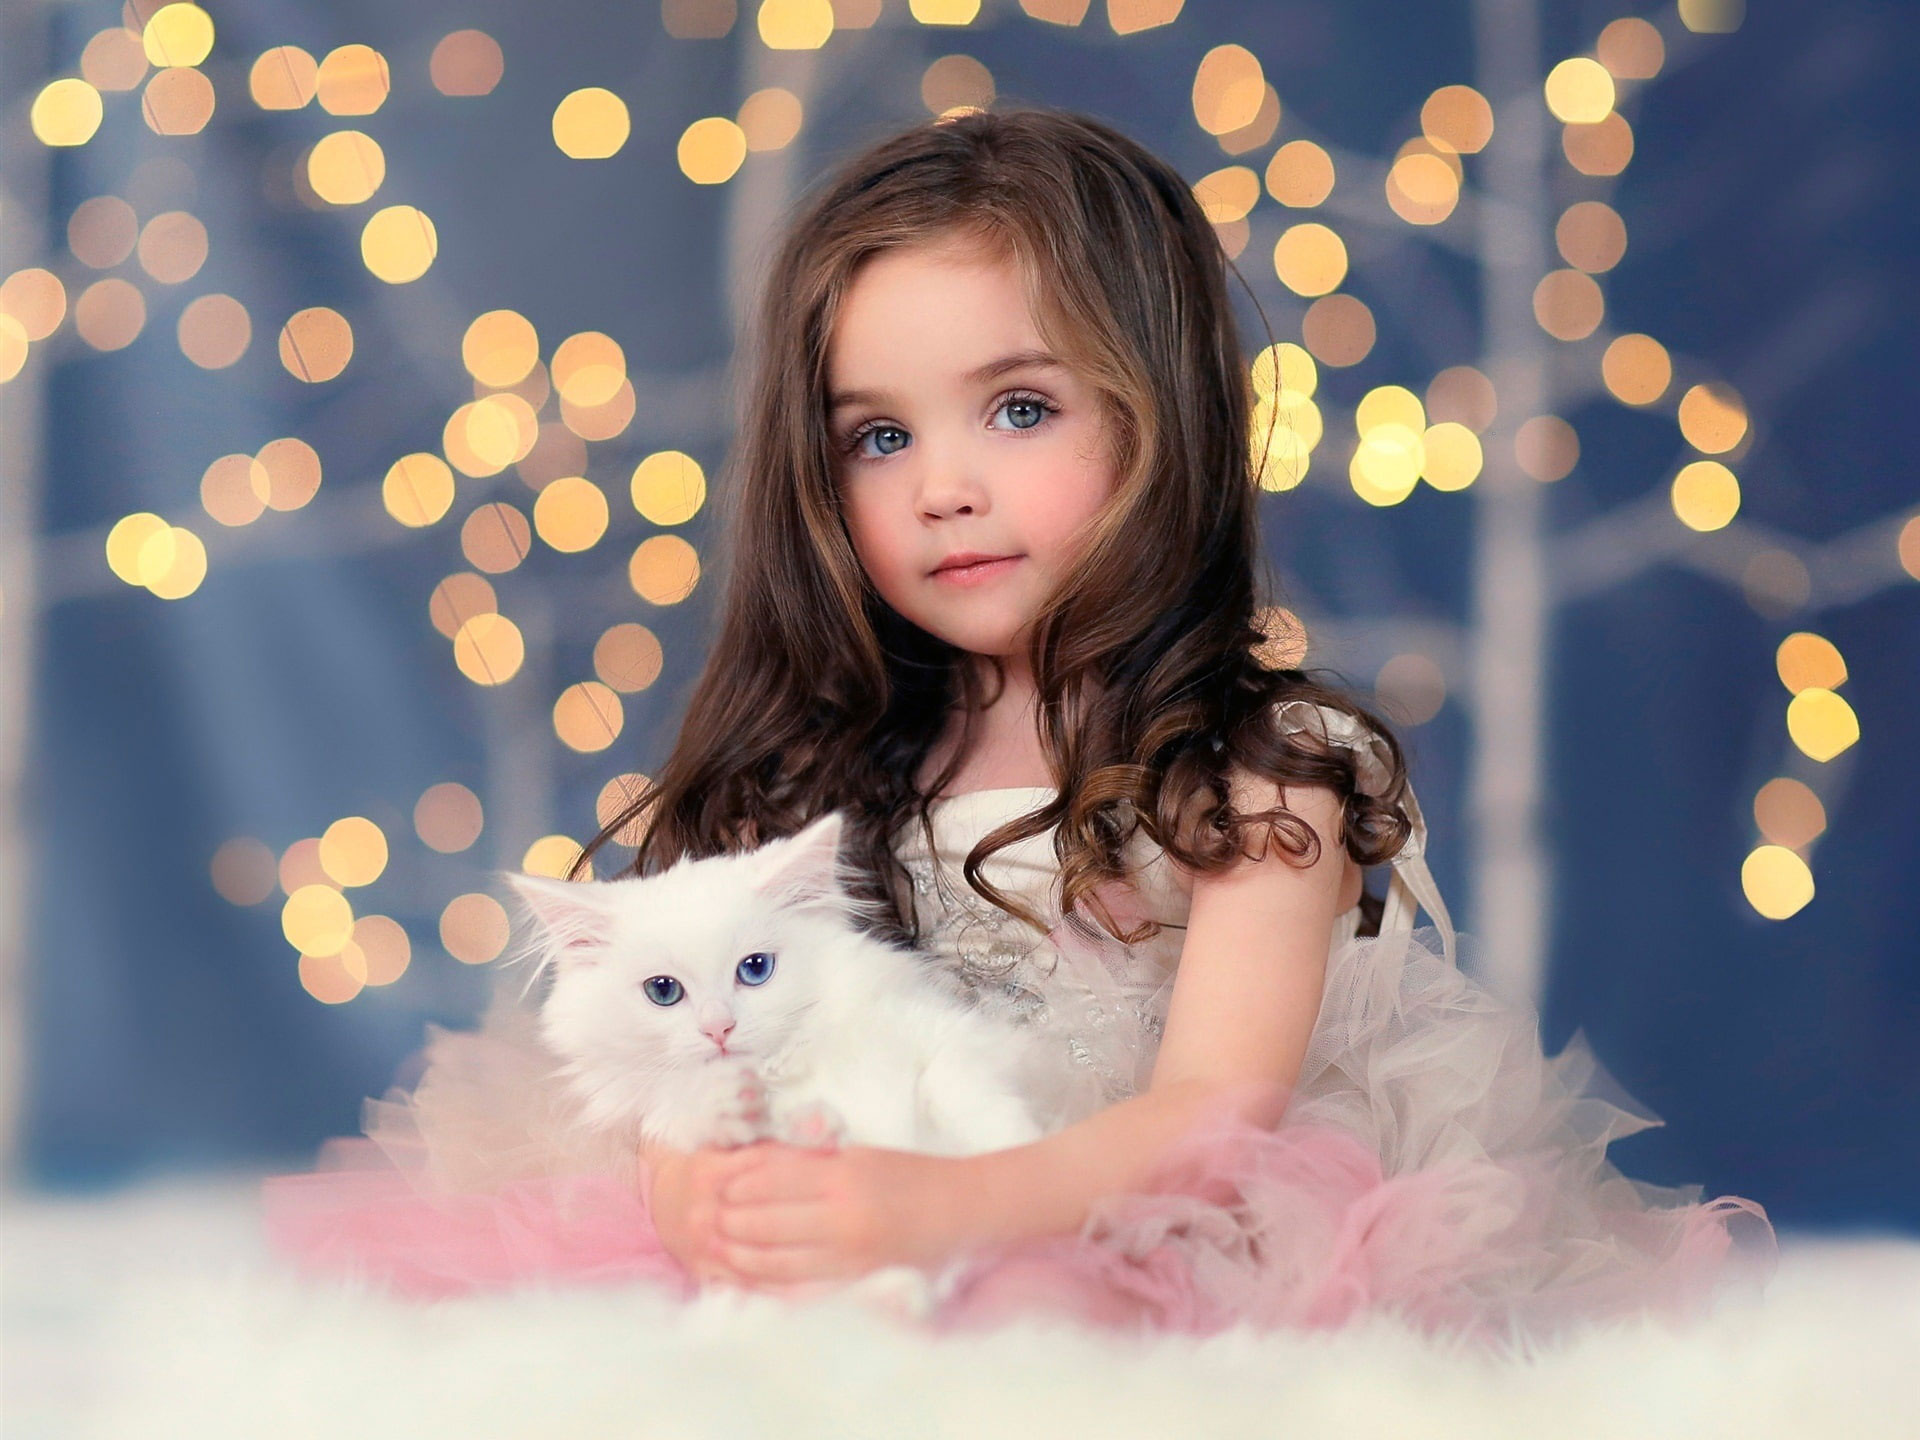 Wallpaper Cute Girl, White Kitten, Lights, Bokeh